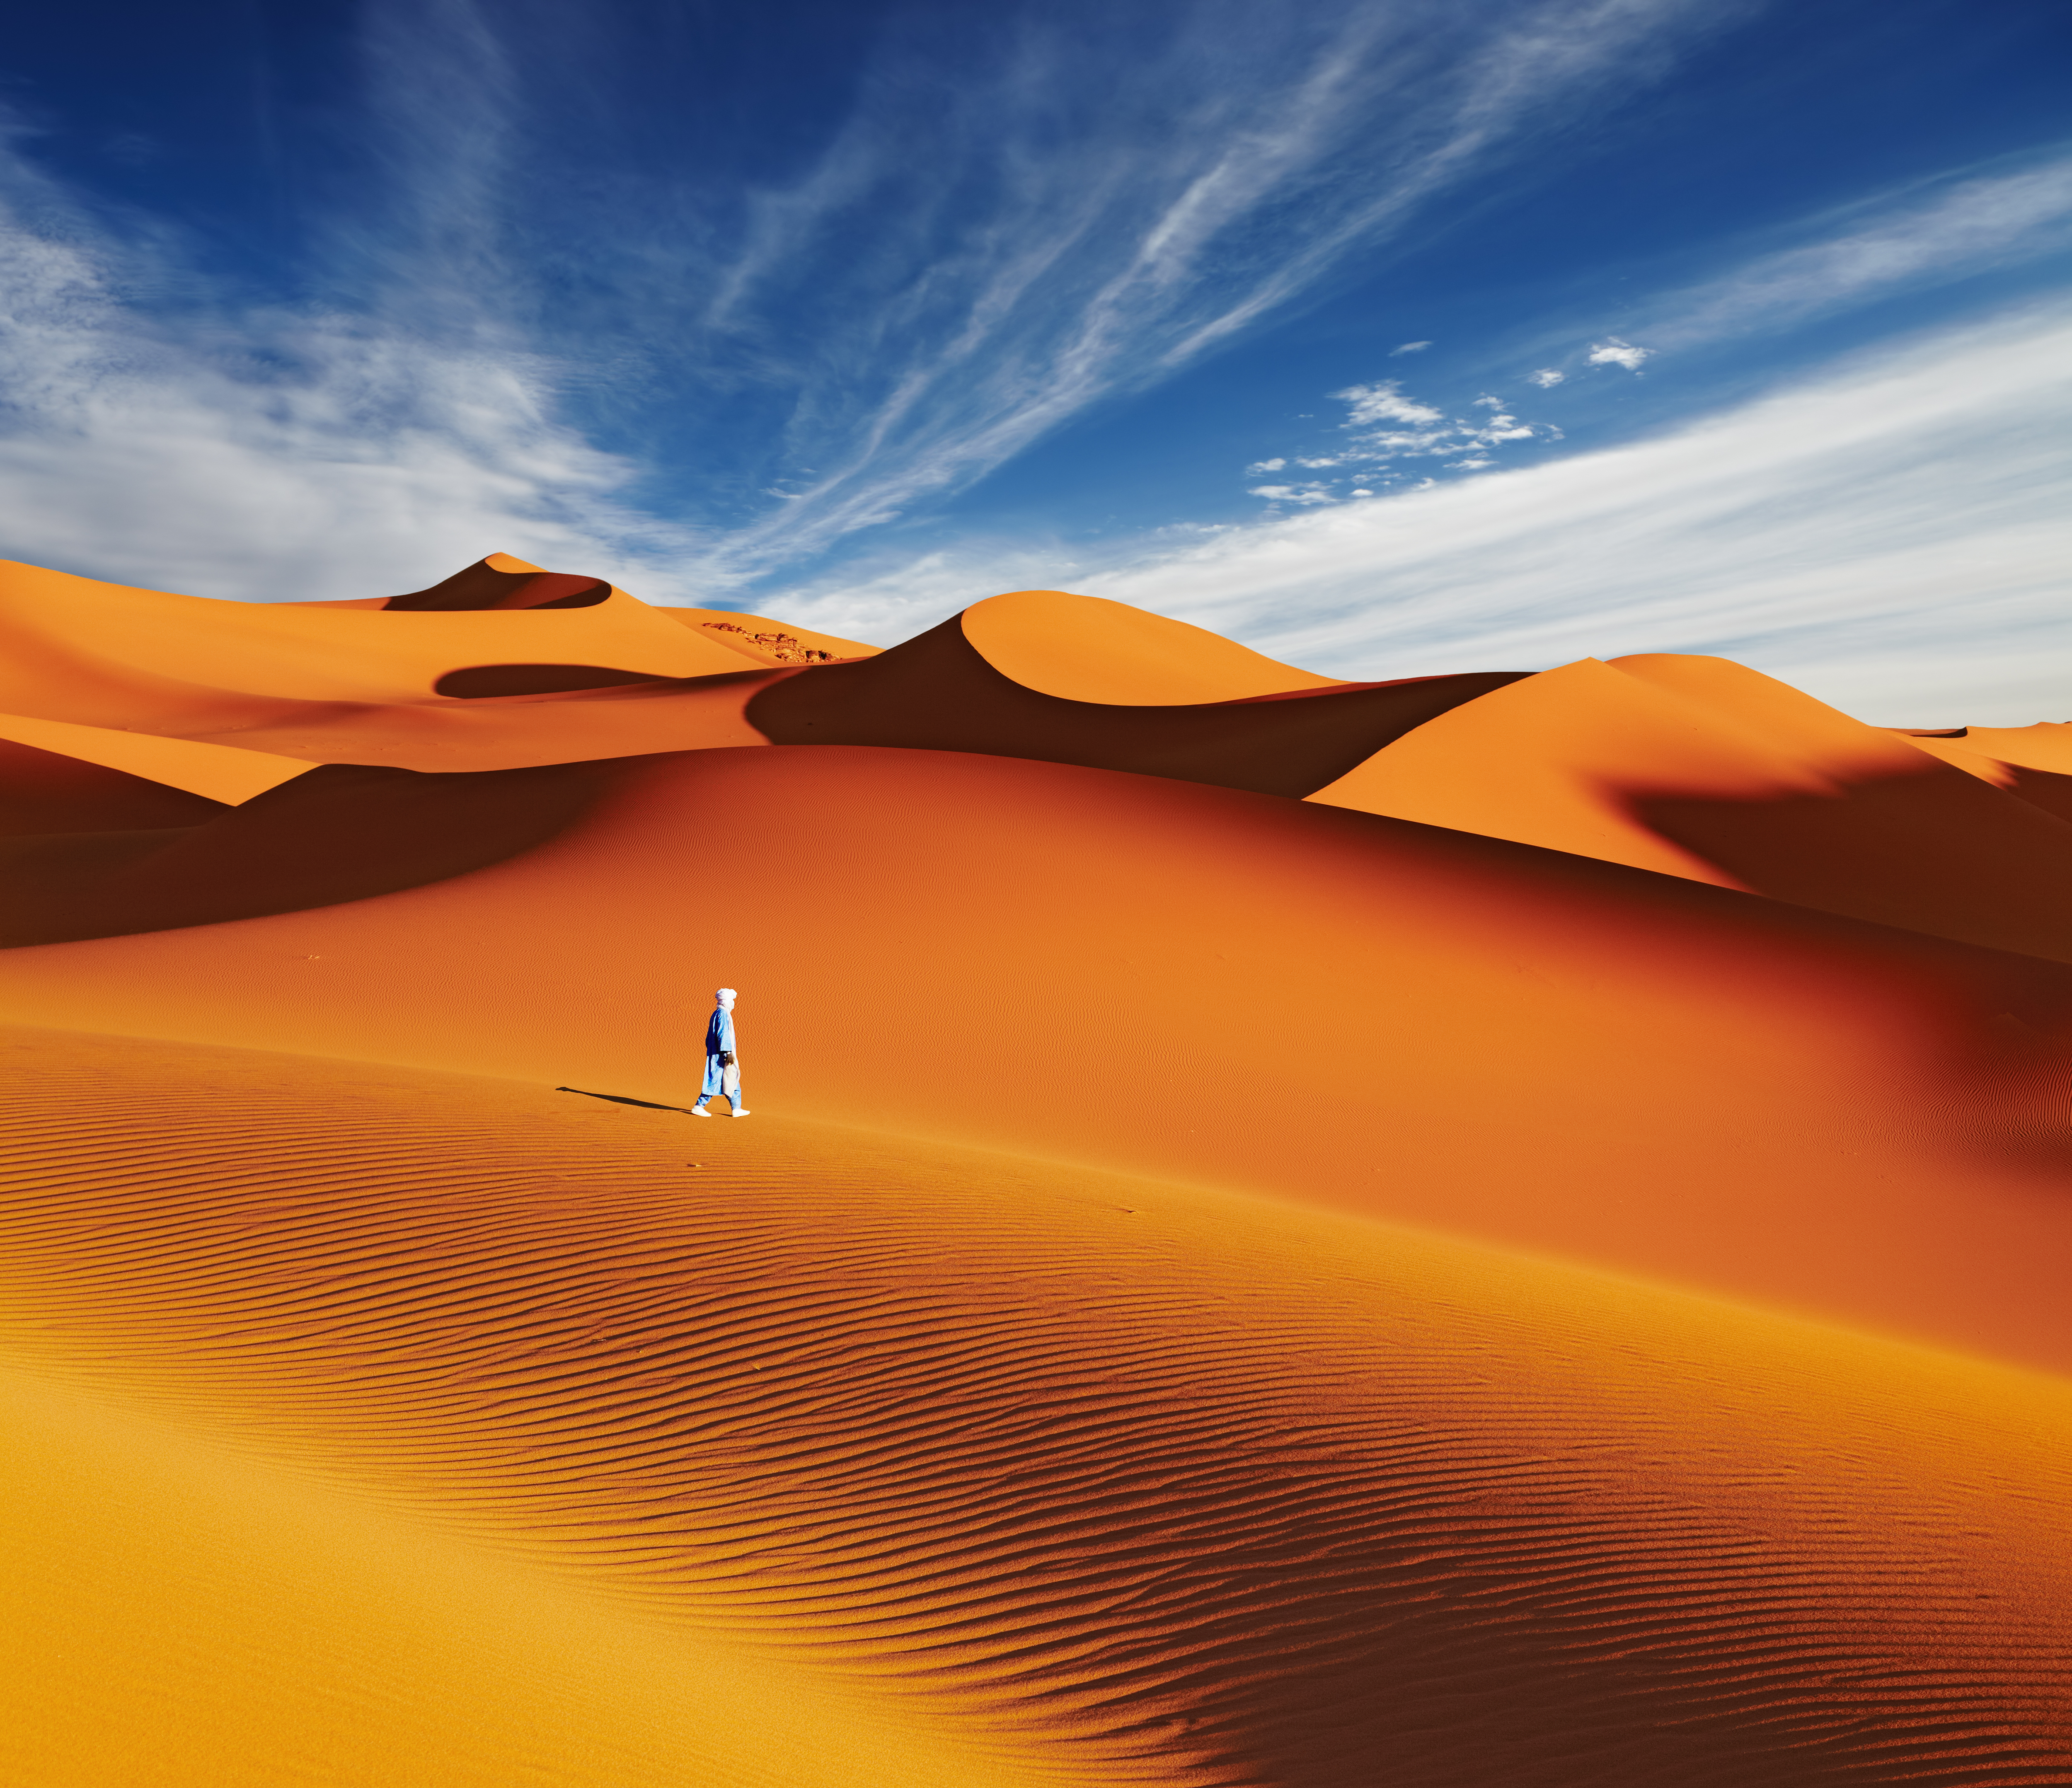 désert du sahara